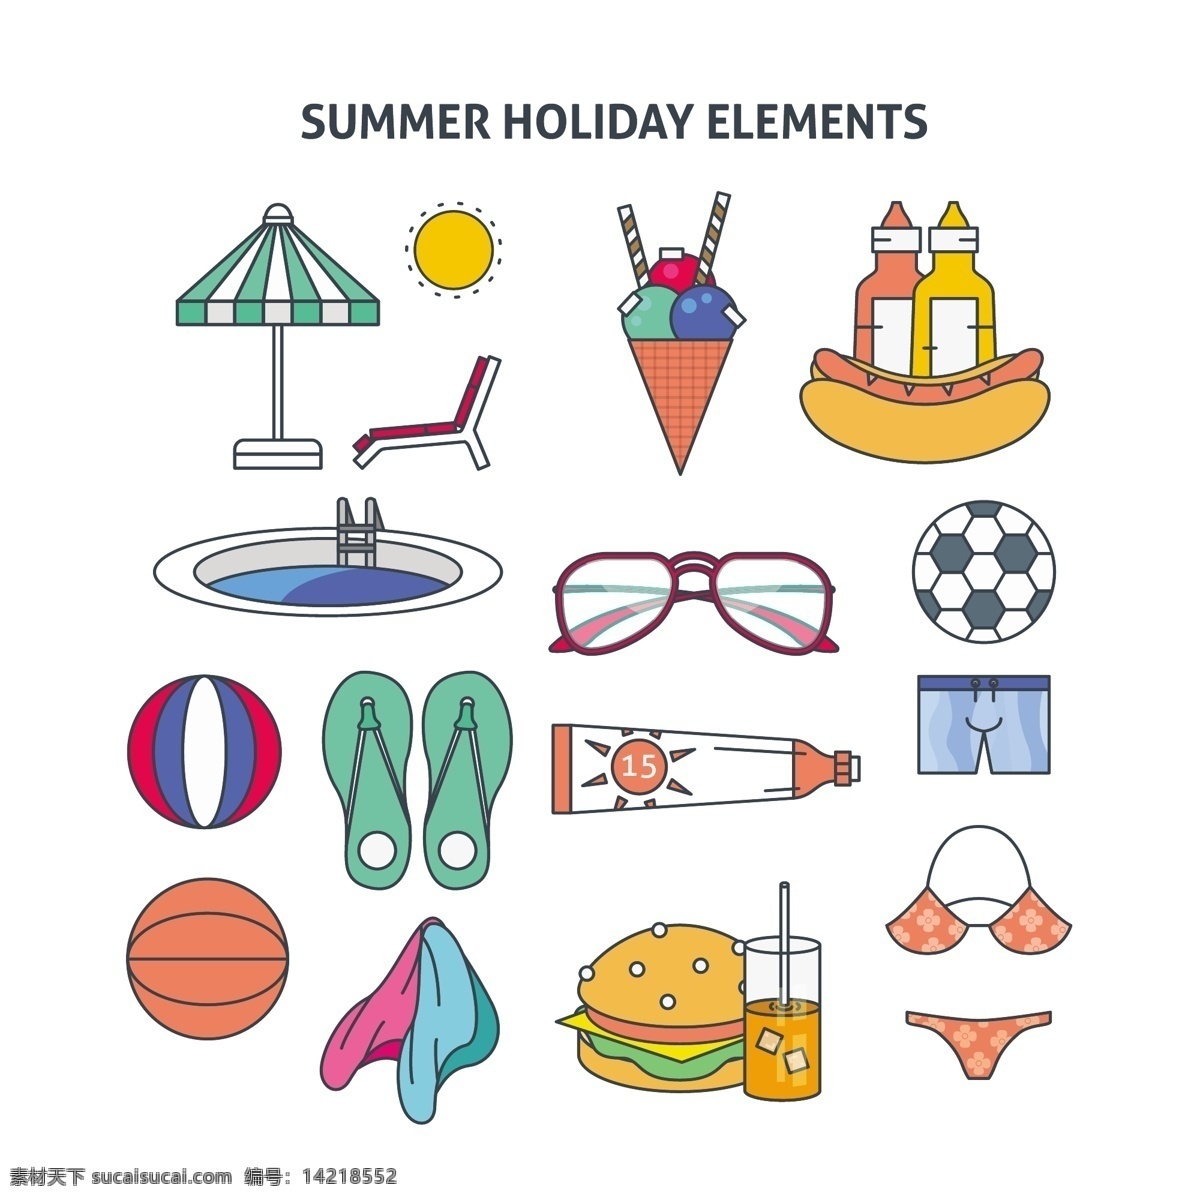 夏天的图标集 暑期 旅游 图标 相机 太阳 海滩 冰淇淋 眼镜 标志 饮料 船 鸡尾酒 冰 假日 伞 球 太阳眼镜 度假 白色